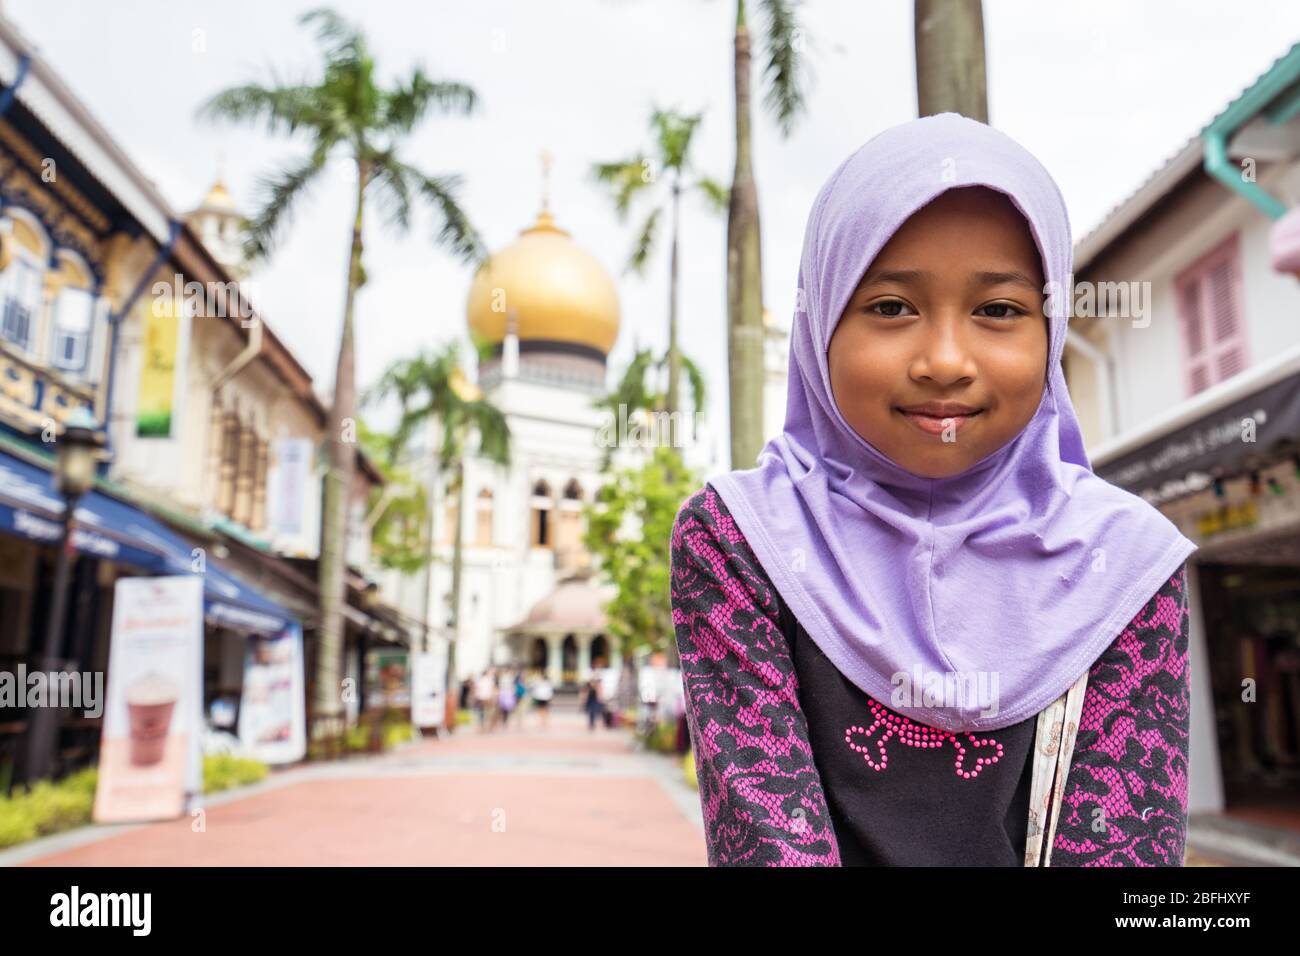 Singapur / Singapur - 15. Februar 2019: Porträt eines muslimischen Mädchens mit bunten Kleidern vor Masjid Sultan, Singapur Stockfoto